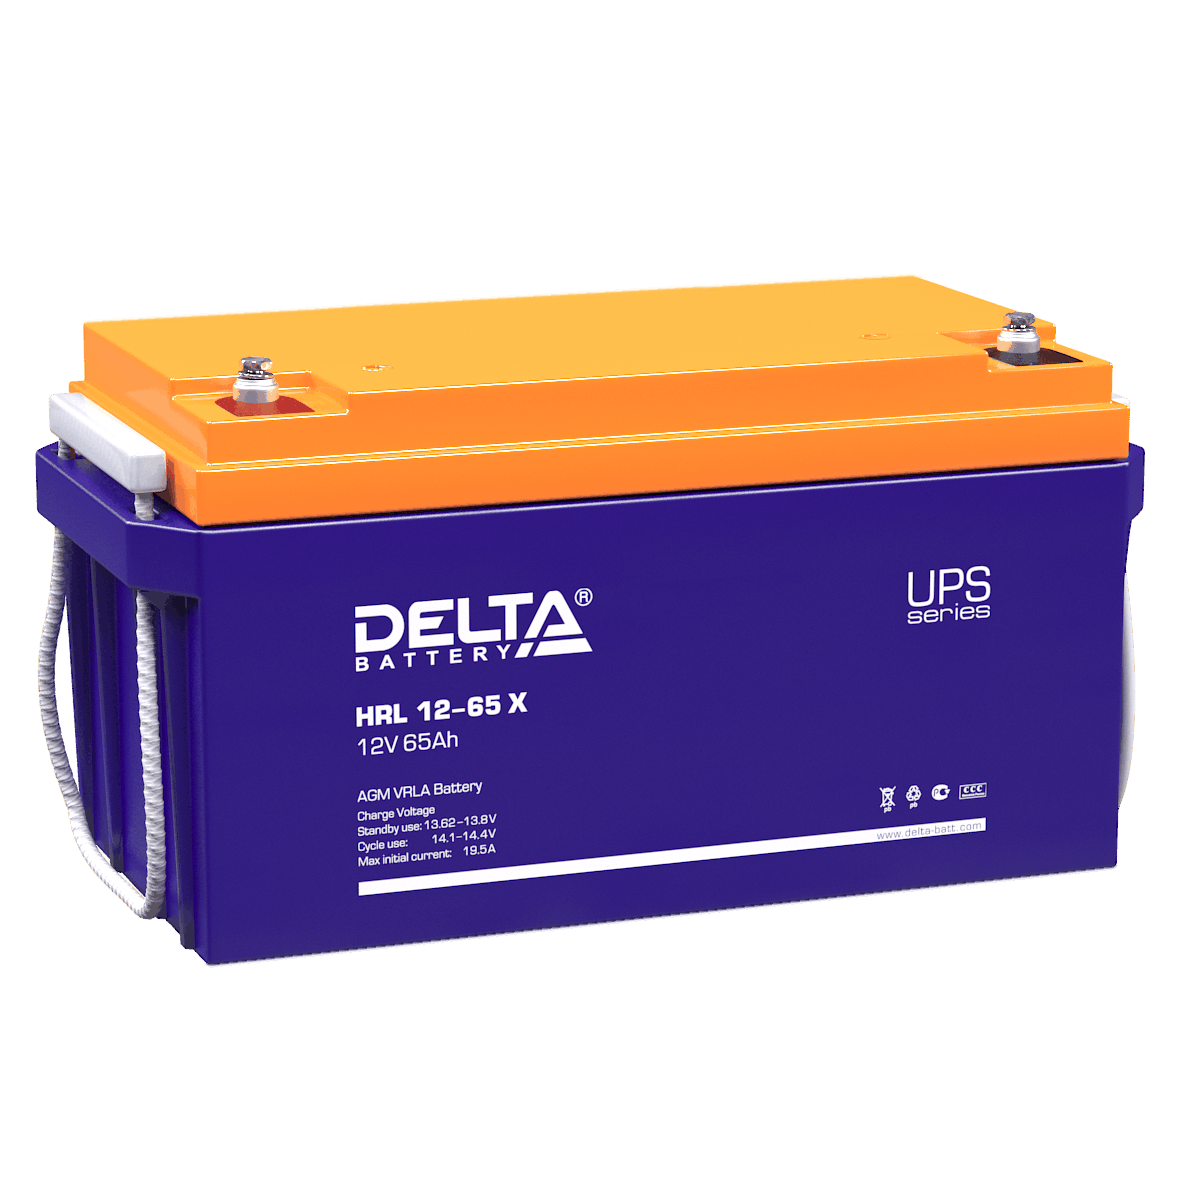 Все Батареи DELTA HRL 12-65 X видеонаблюдения в магазине Vidos Group